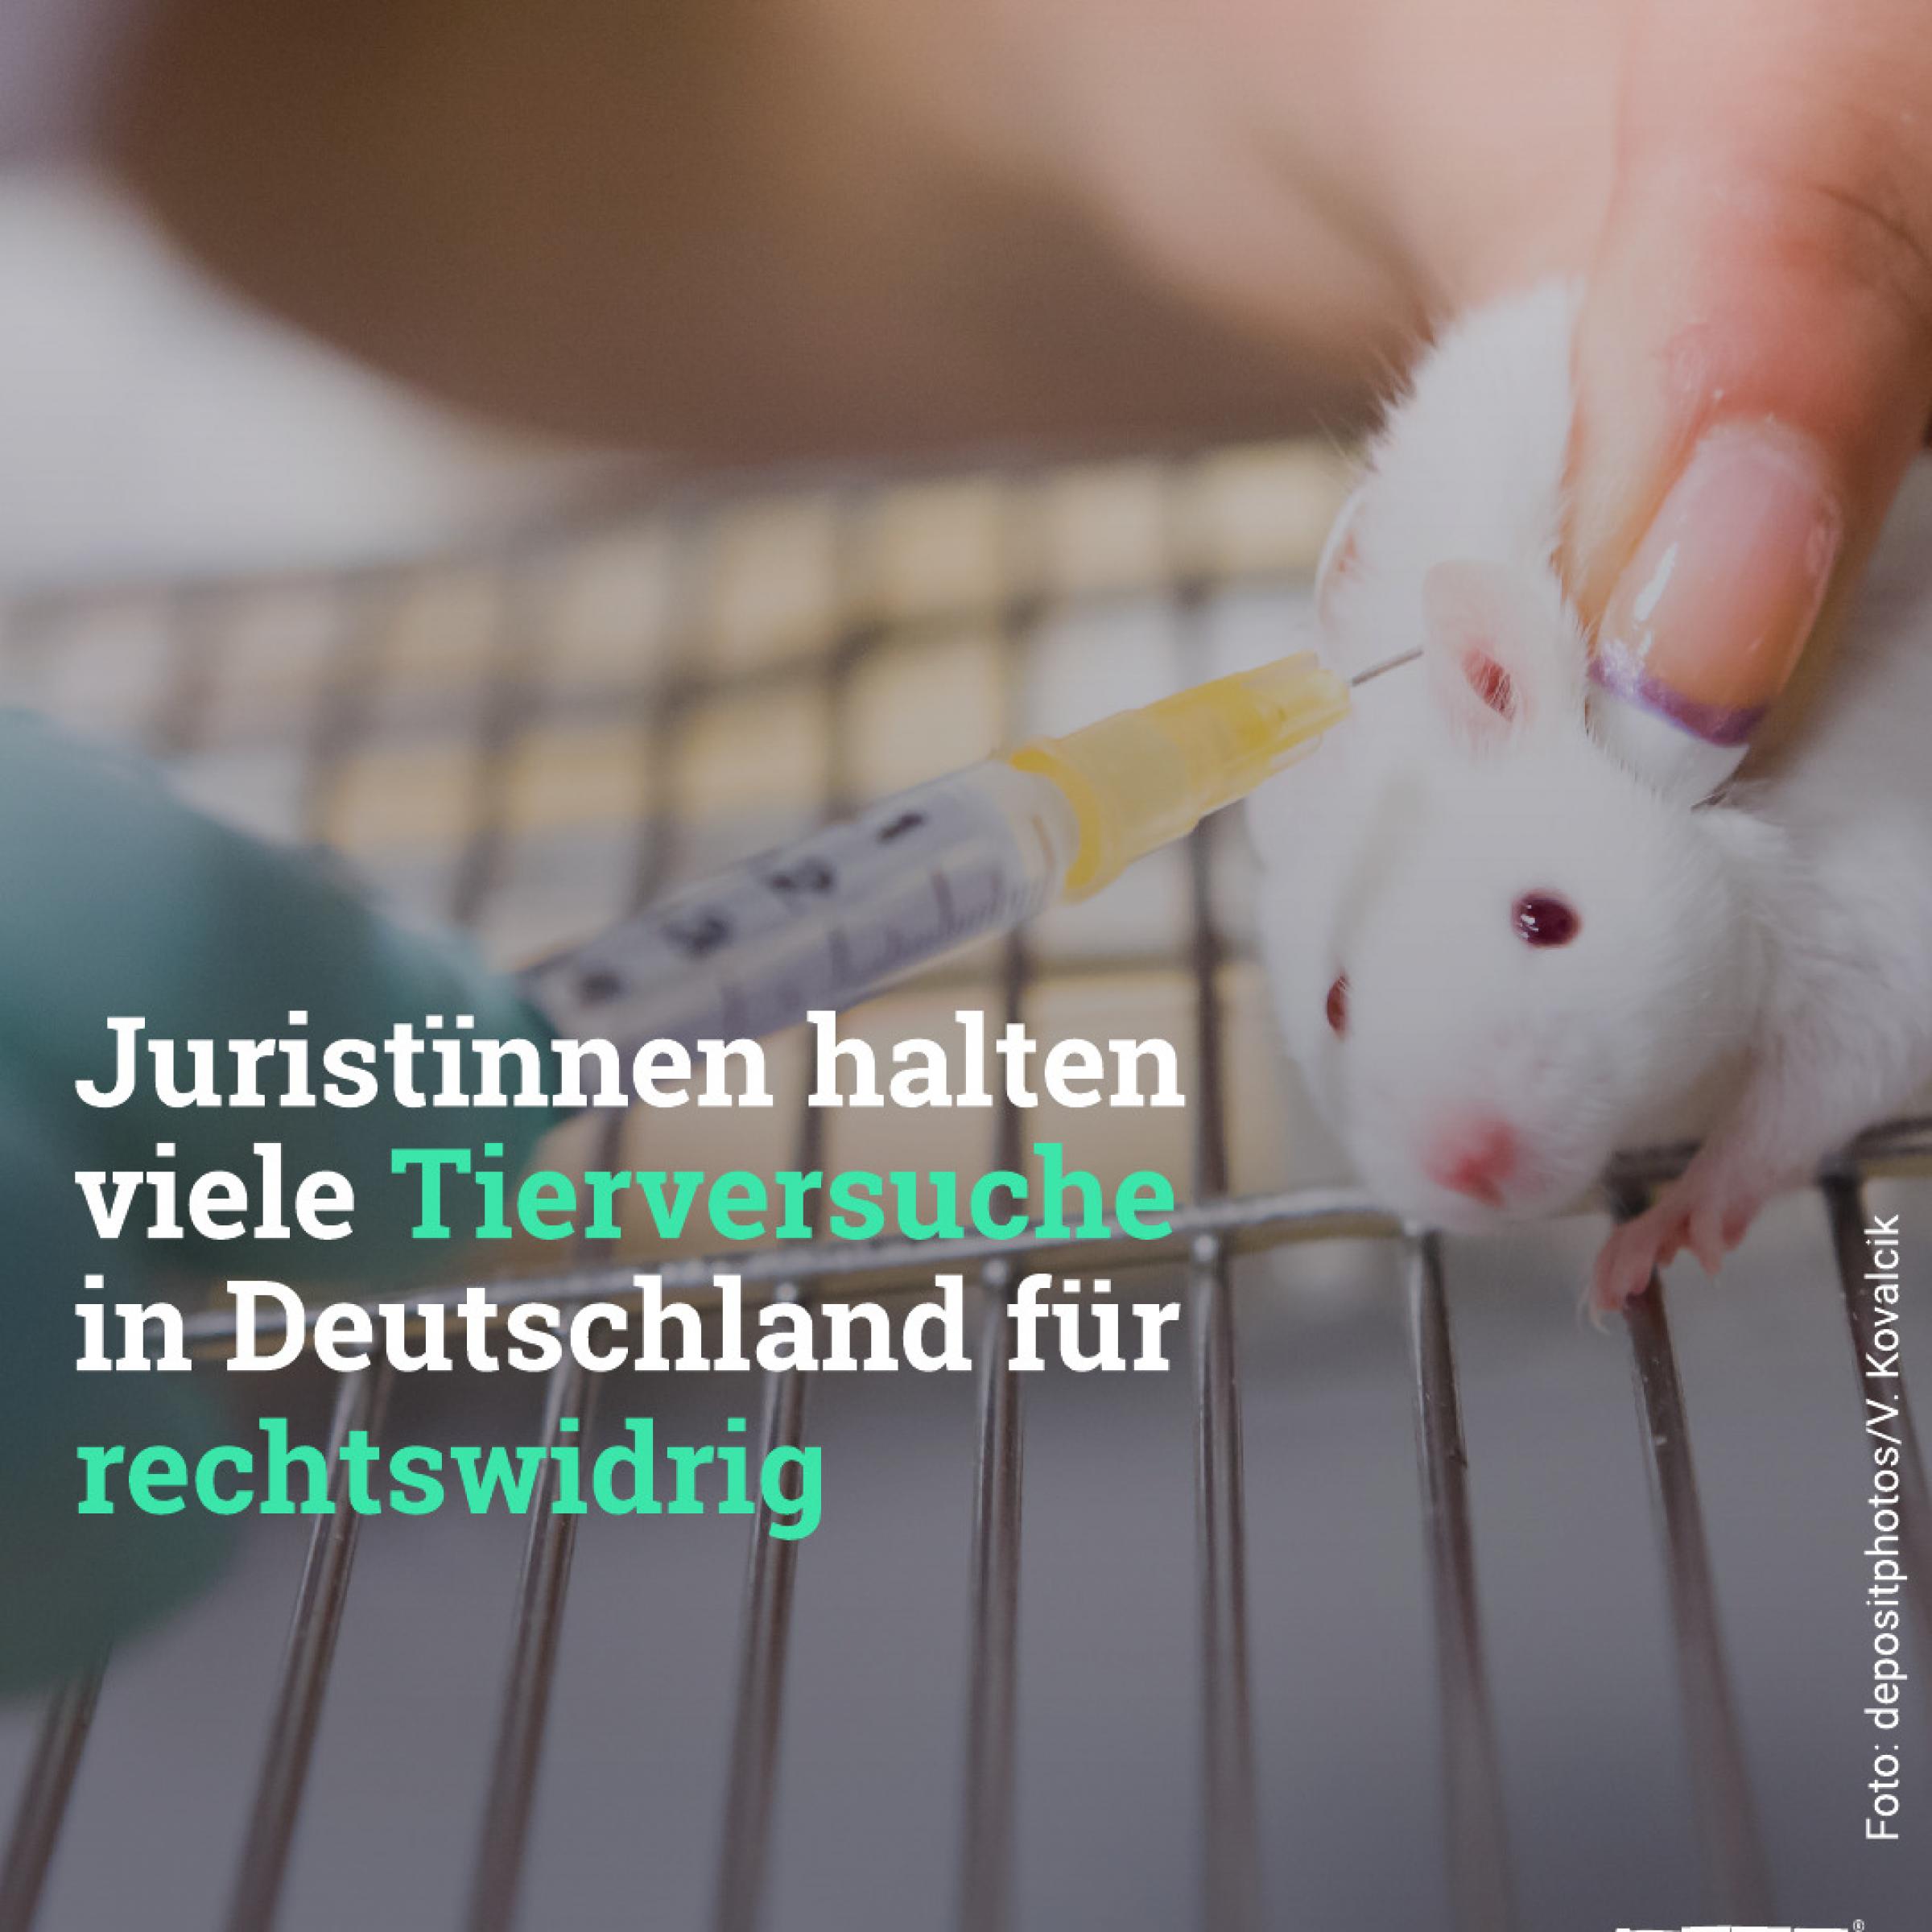 Juristïnnen halten viele Tierversuche in Deutschland für rechtswidrig.